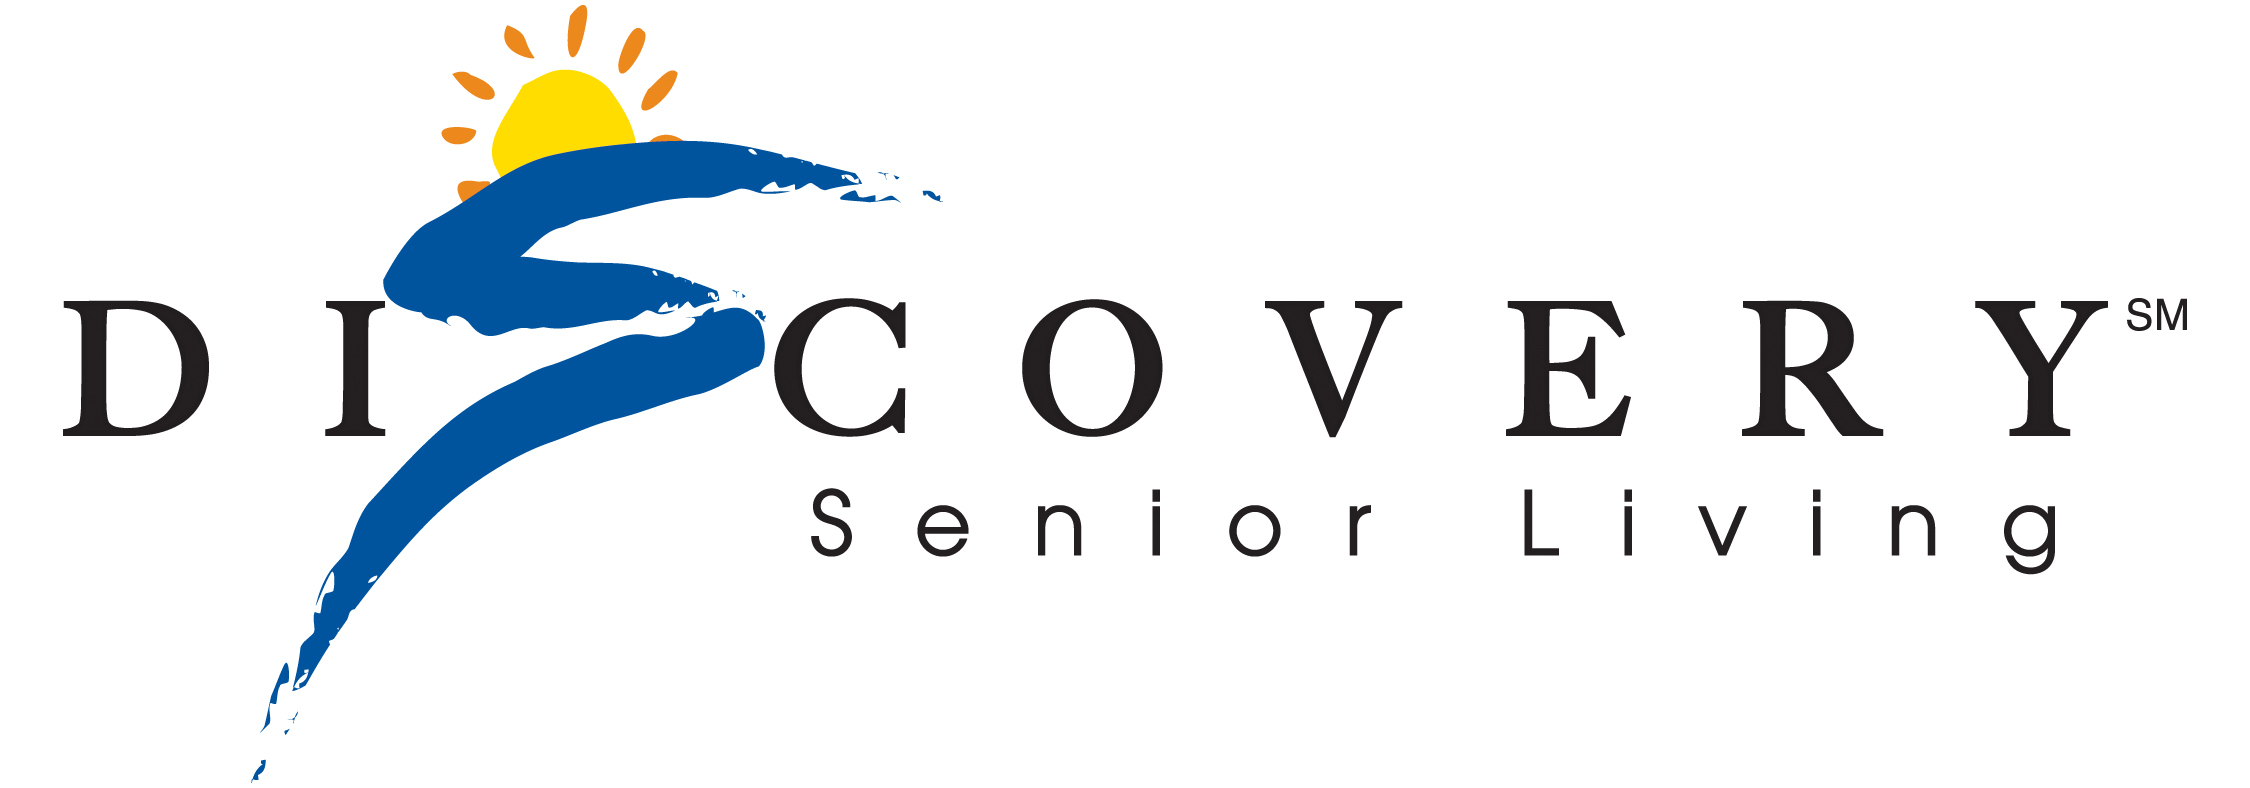 Discovery Senior Living in Bonita Springs, FL, Named Manager of Senior